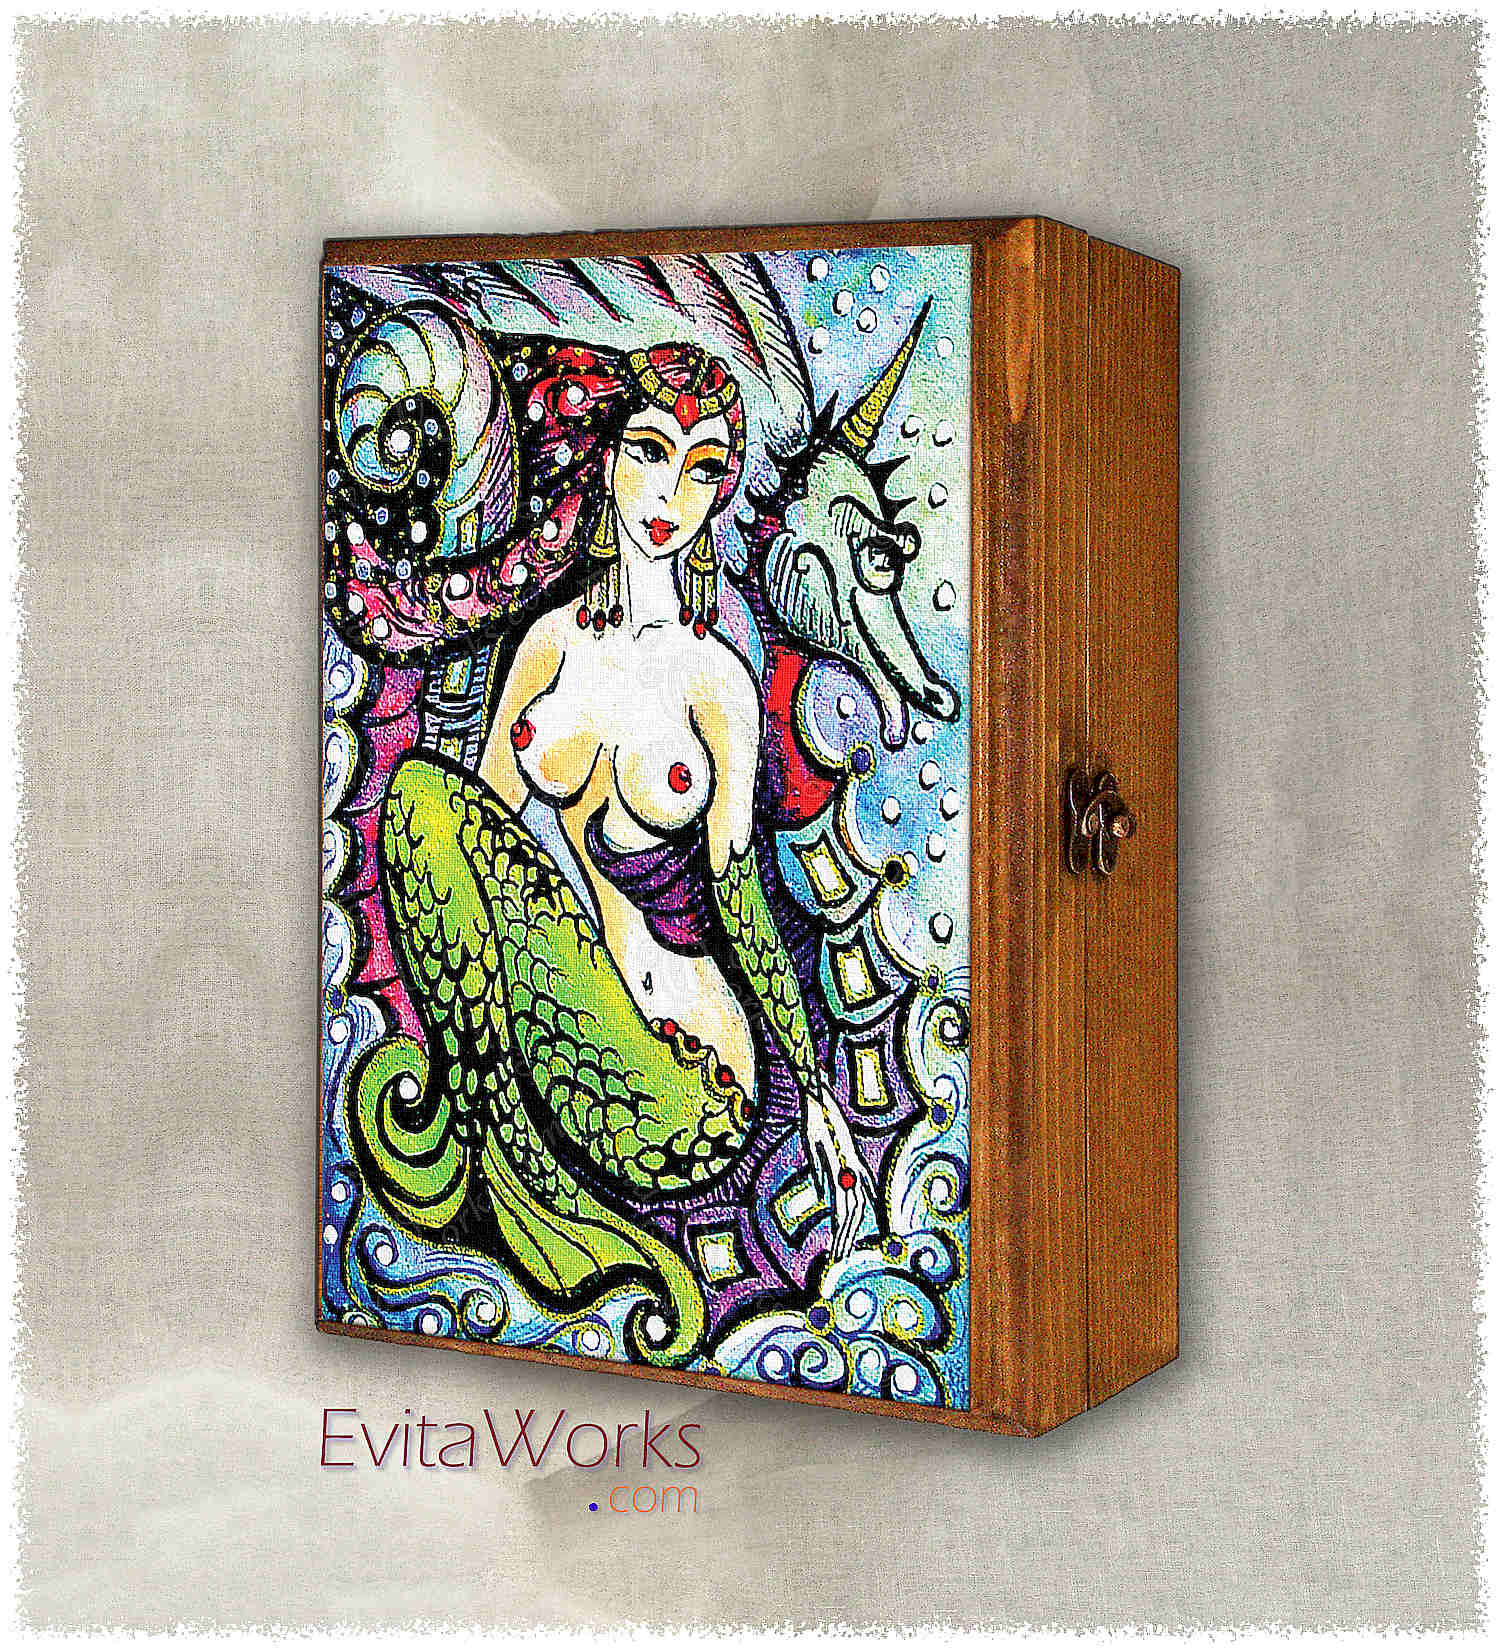 ao mermaid 12 bxl ~ EvitaWorks